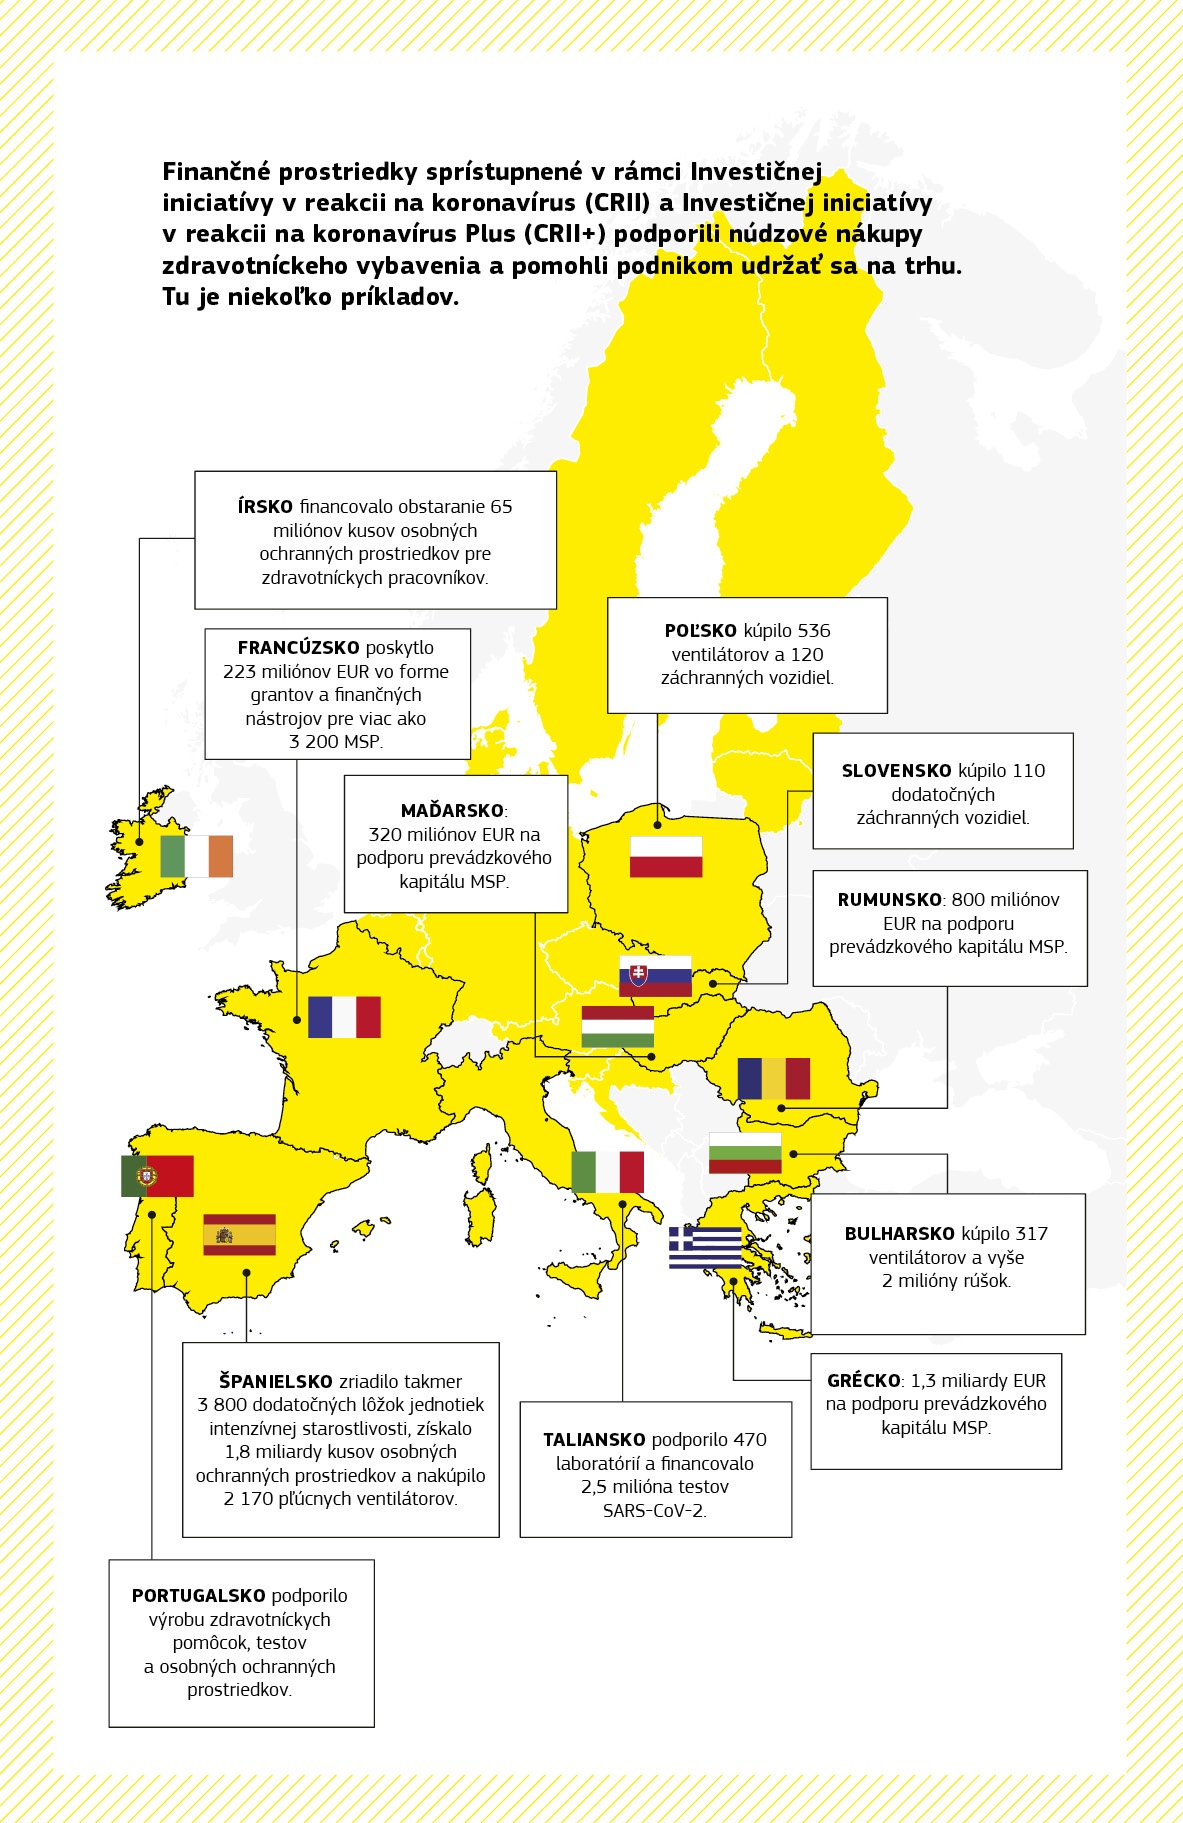 Na mape sú zhrnuté viaceré projekty na podporu pandémie financované z Investičnej iniciatívy v reakcii na koronavírus a Investičnej iniciatívy v reakcii na koronavírus Plus vo viacerých členských štátoch EÚ.